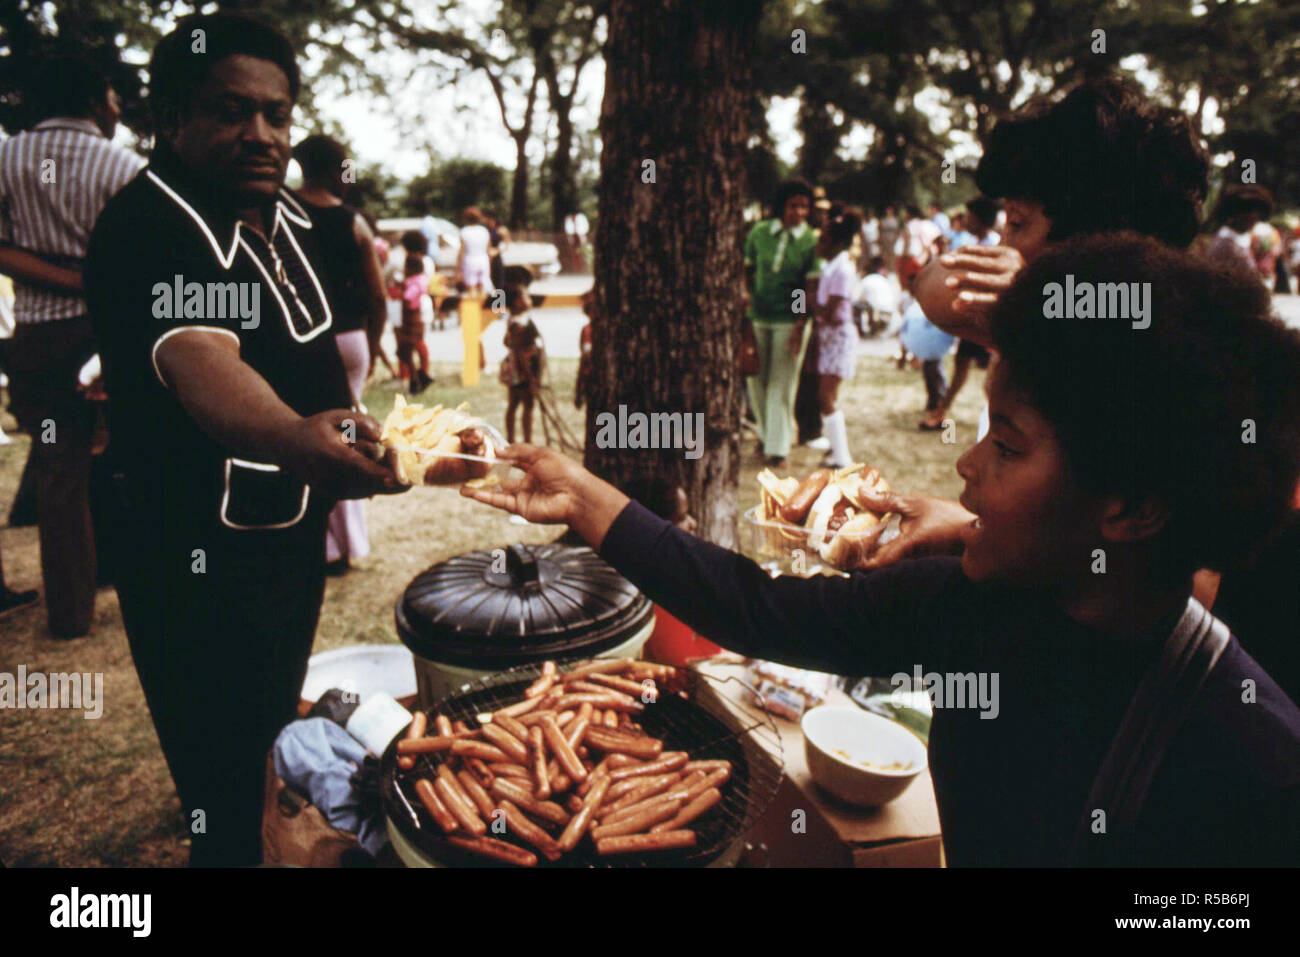 Washington Park sur le côté sud de Chicago où de nombreuses familles noires Profitez d'un pique-nique au cours de l'été, 07/1973 Banque D'Images